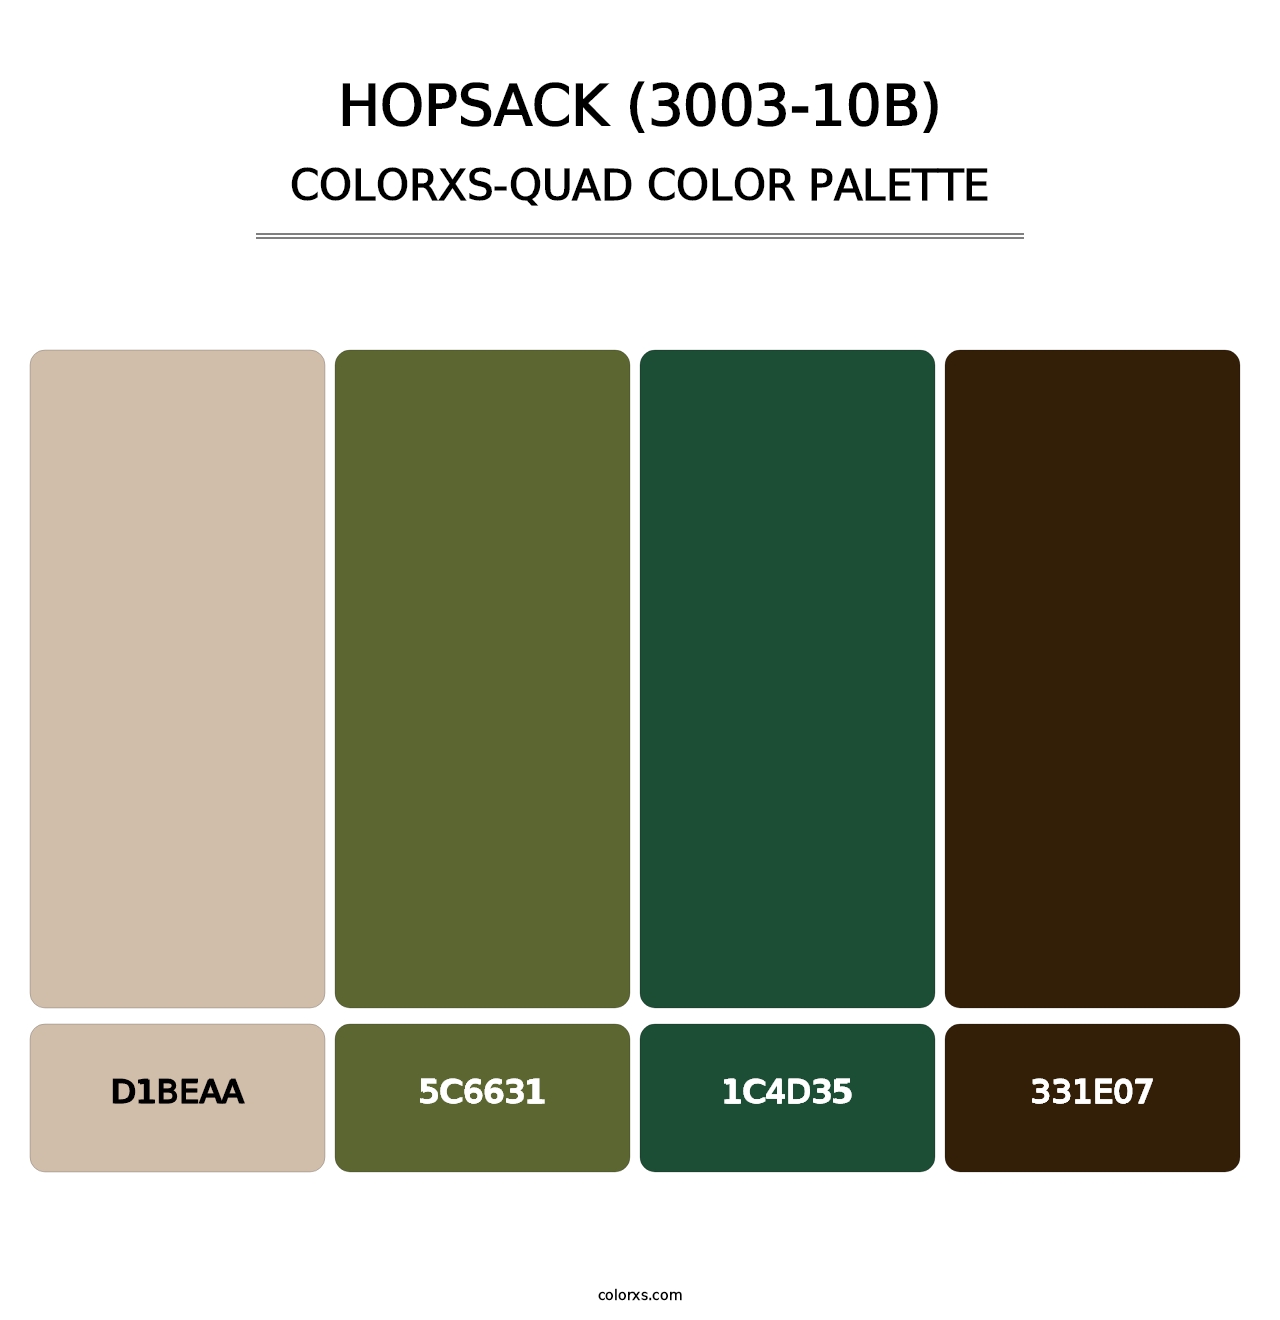 Hopsack (3003-10B) - Colorxs Quad Palette